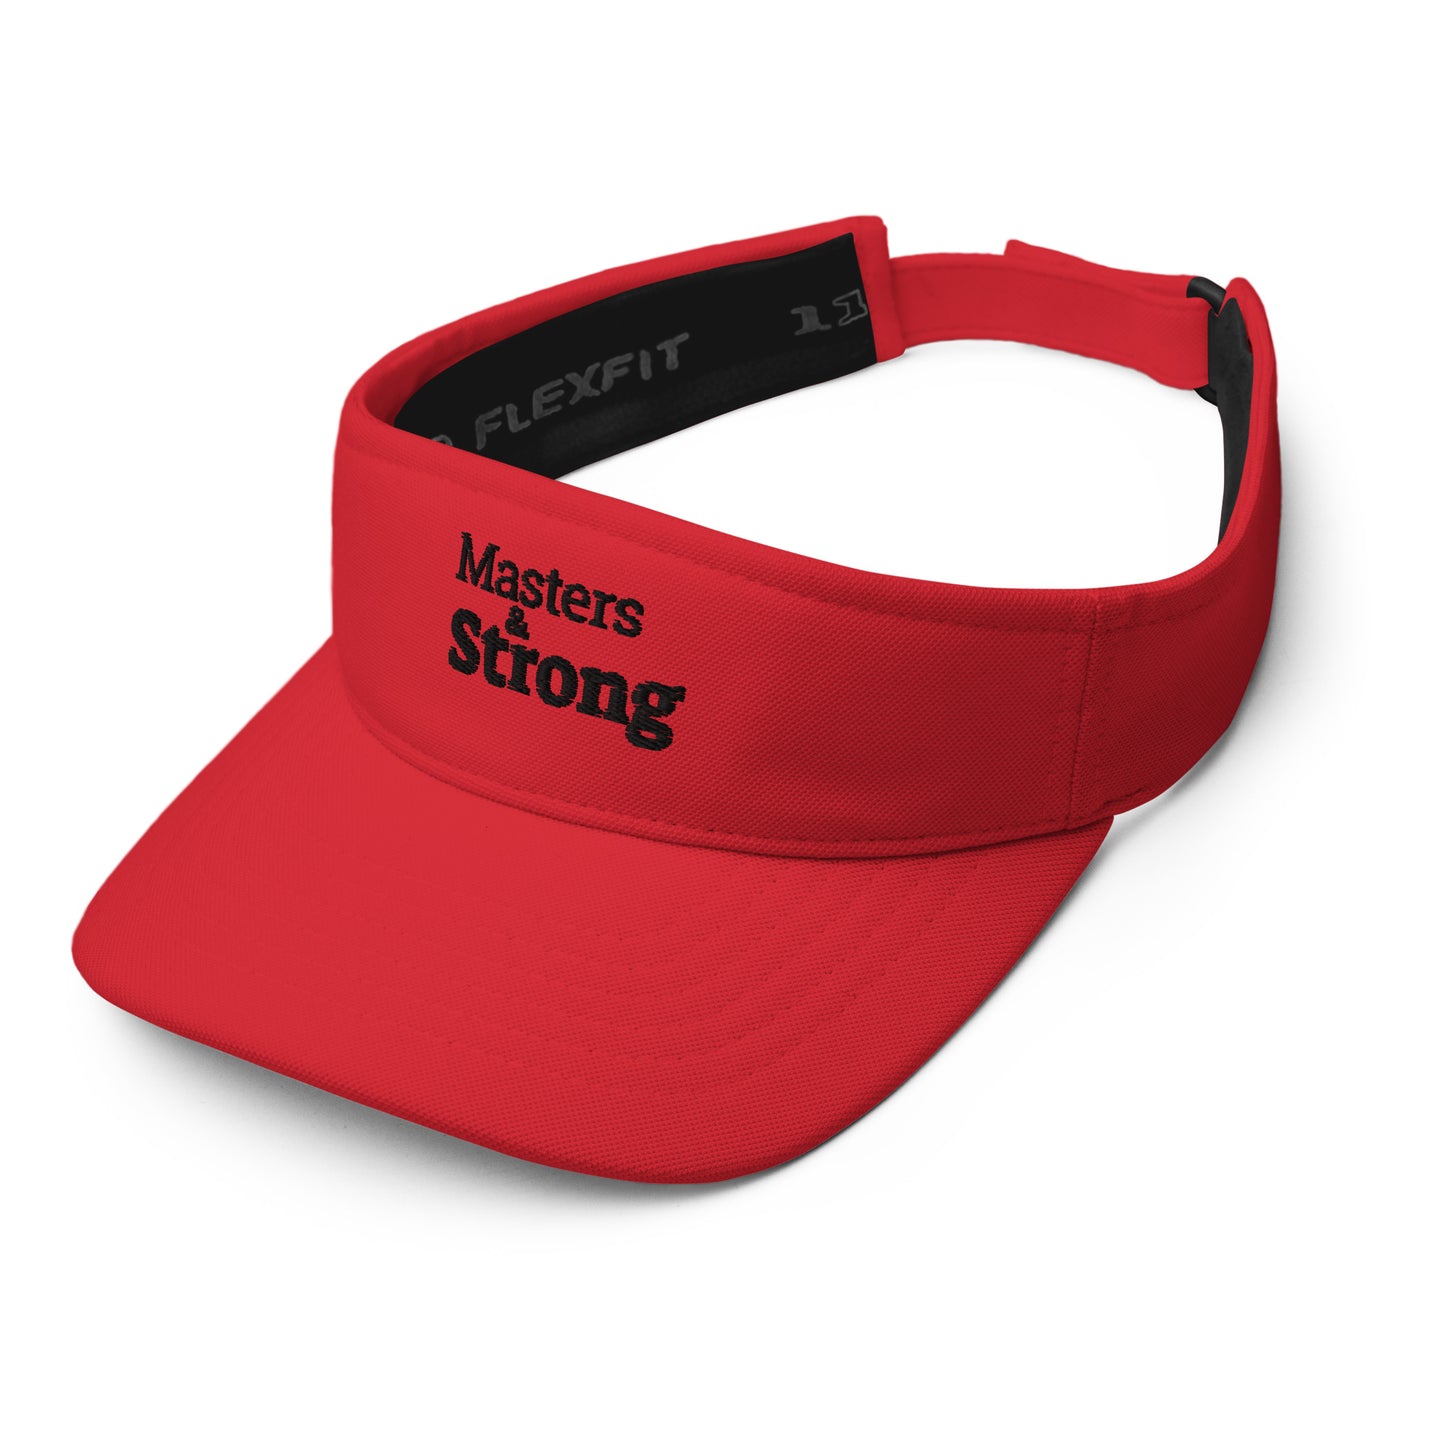 Masters & Strong visor